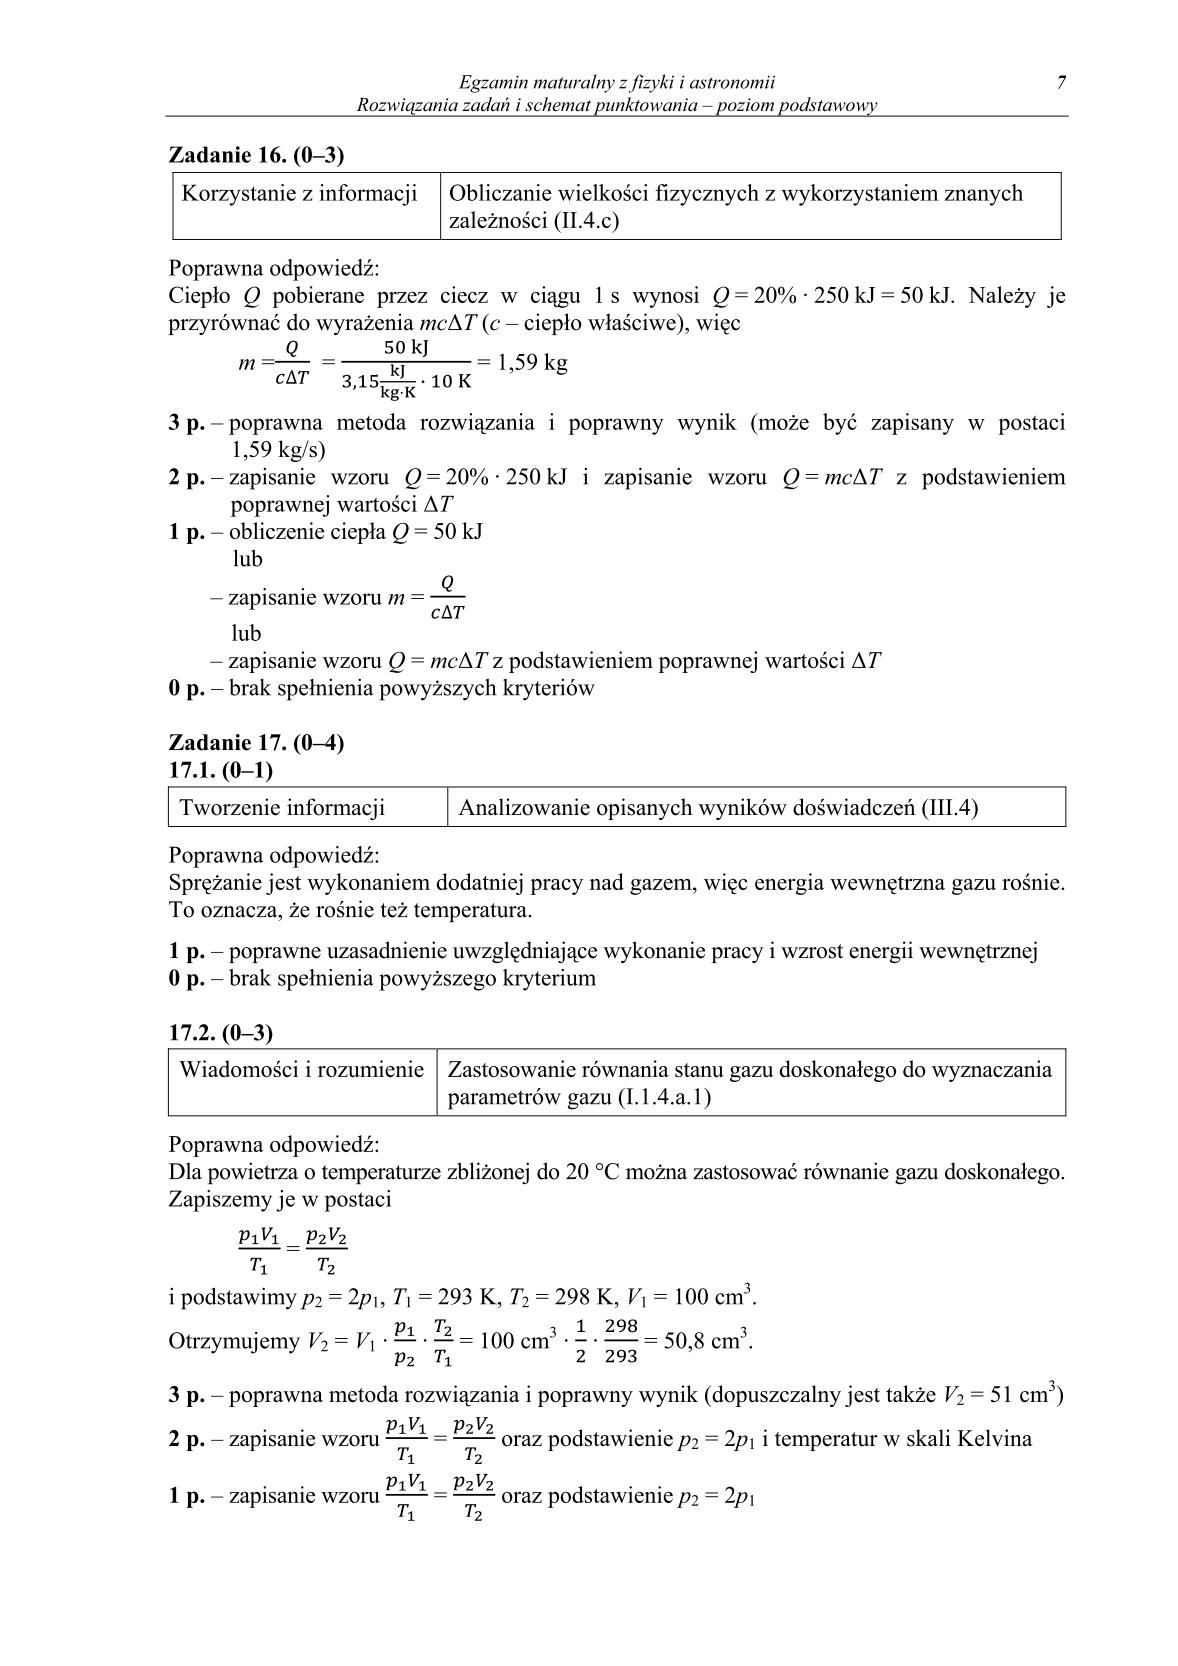 odpowiedzi-fizyka-i-astronomia-poziom-podstawowy-matura-2014-str.7